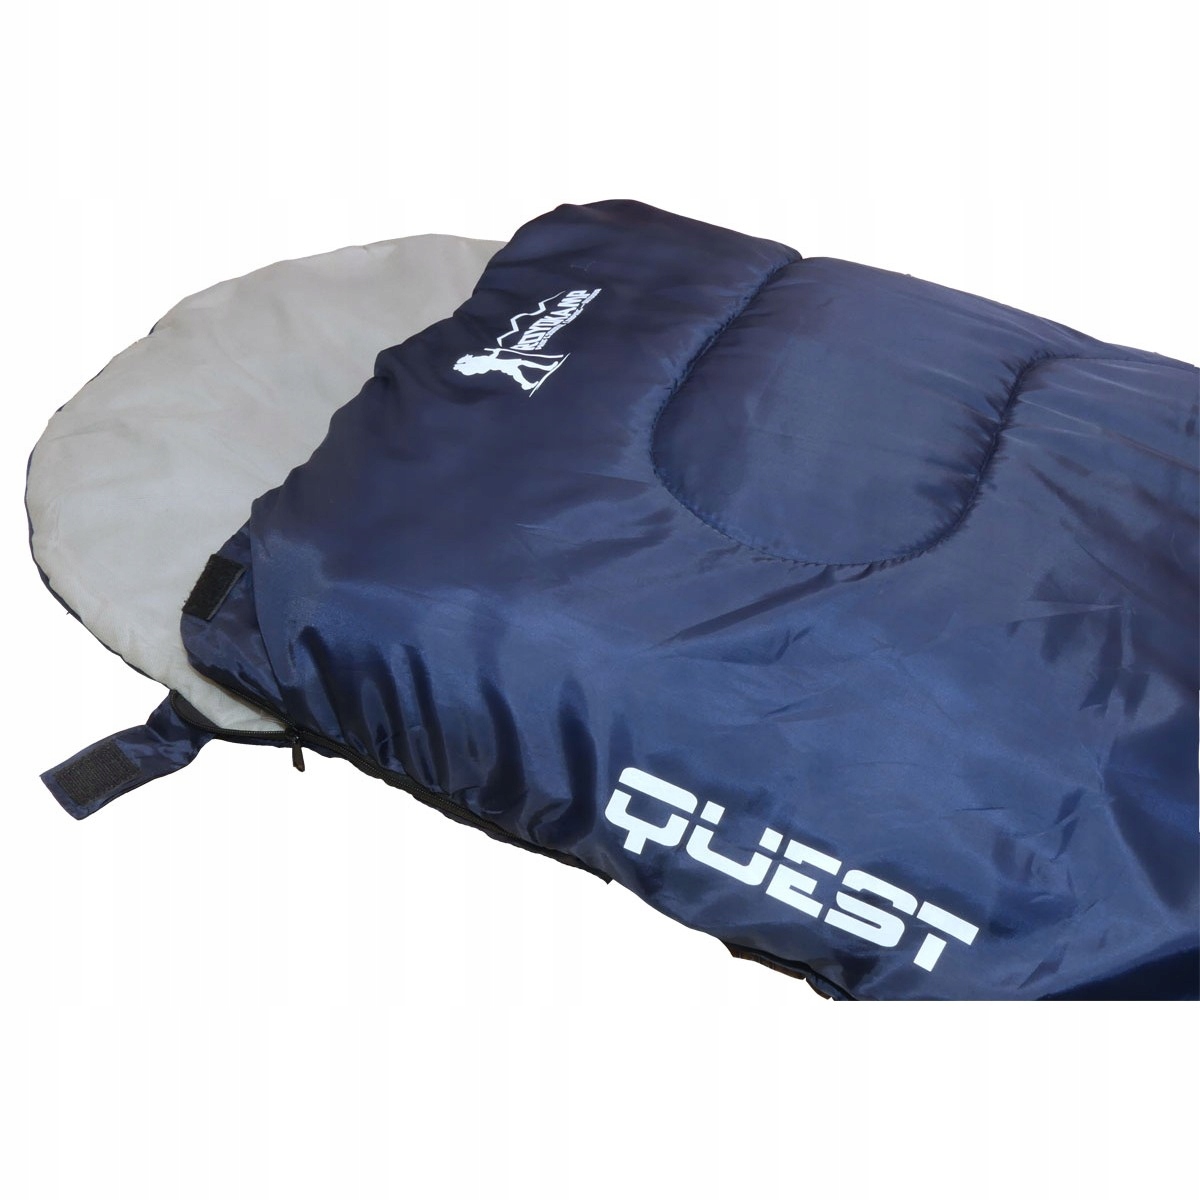 Туристический спальный мешок QUEST 210x70cm темно-синий код производителя 5902431024912